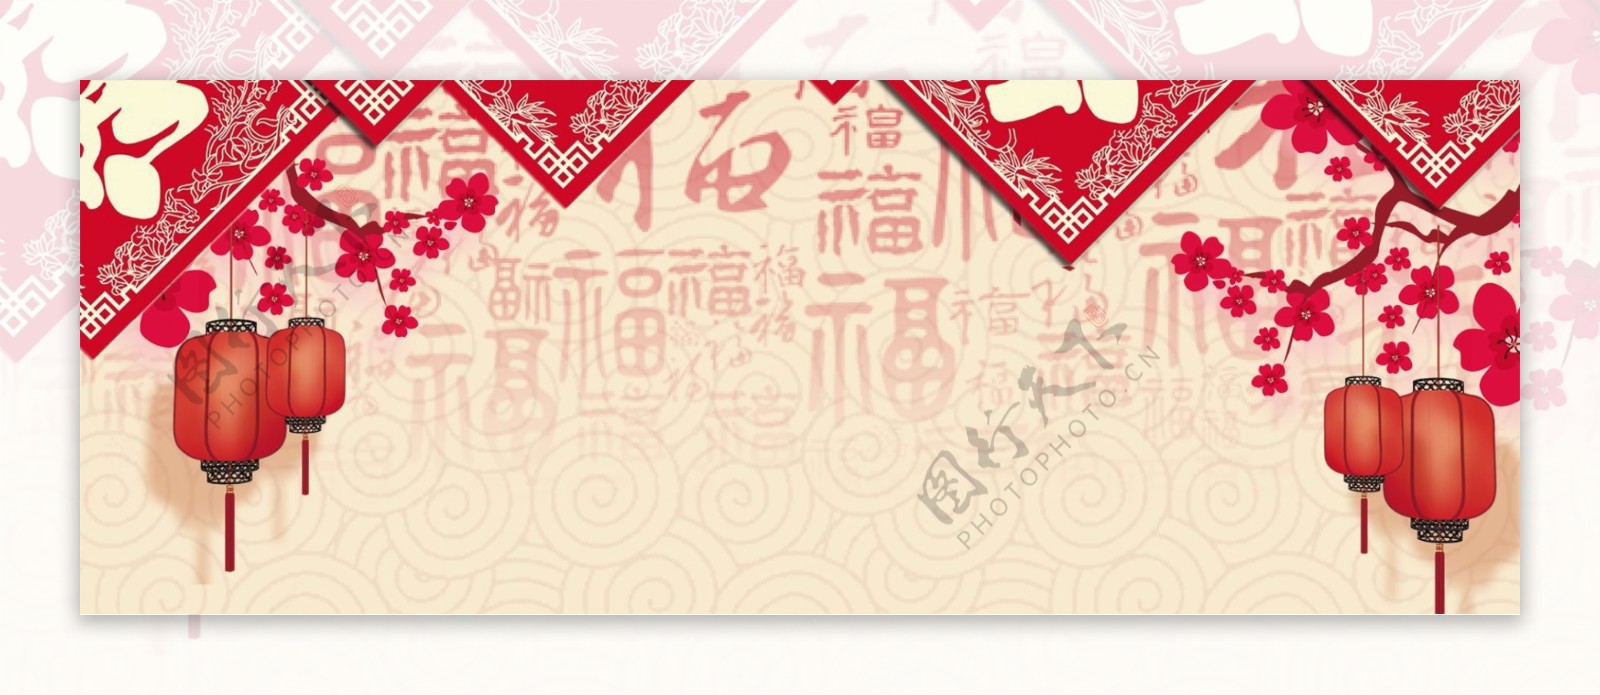 新年快乐中国风手绘banner